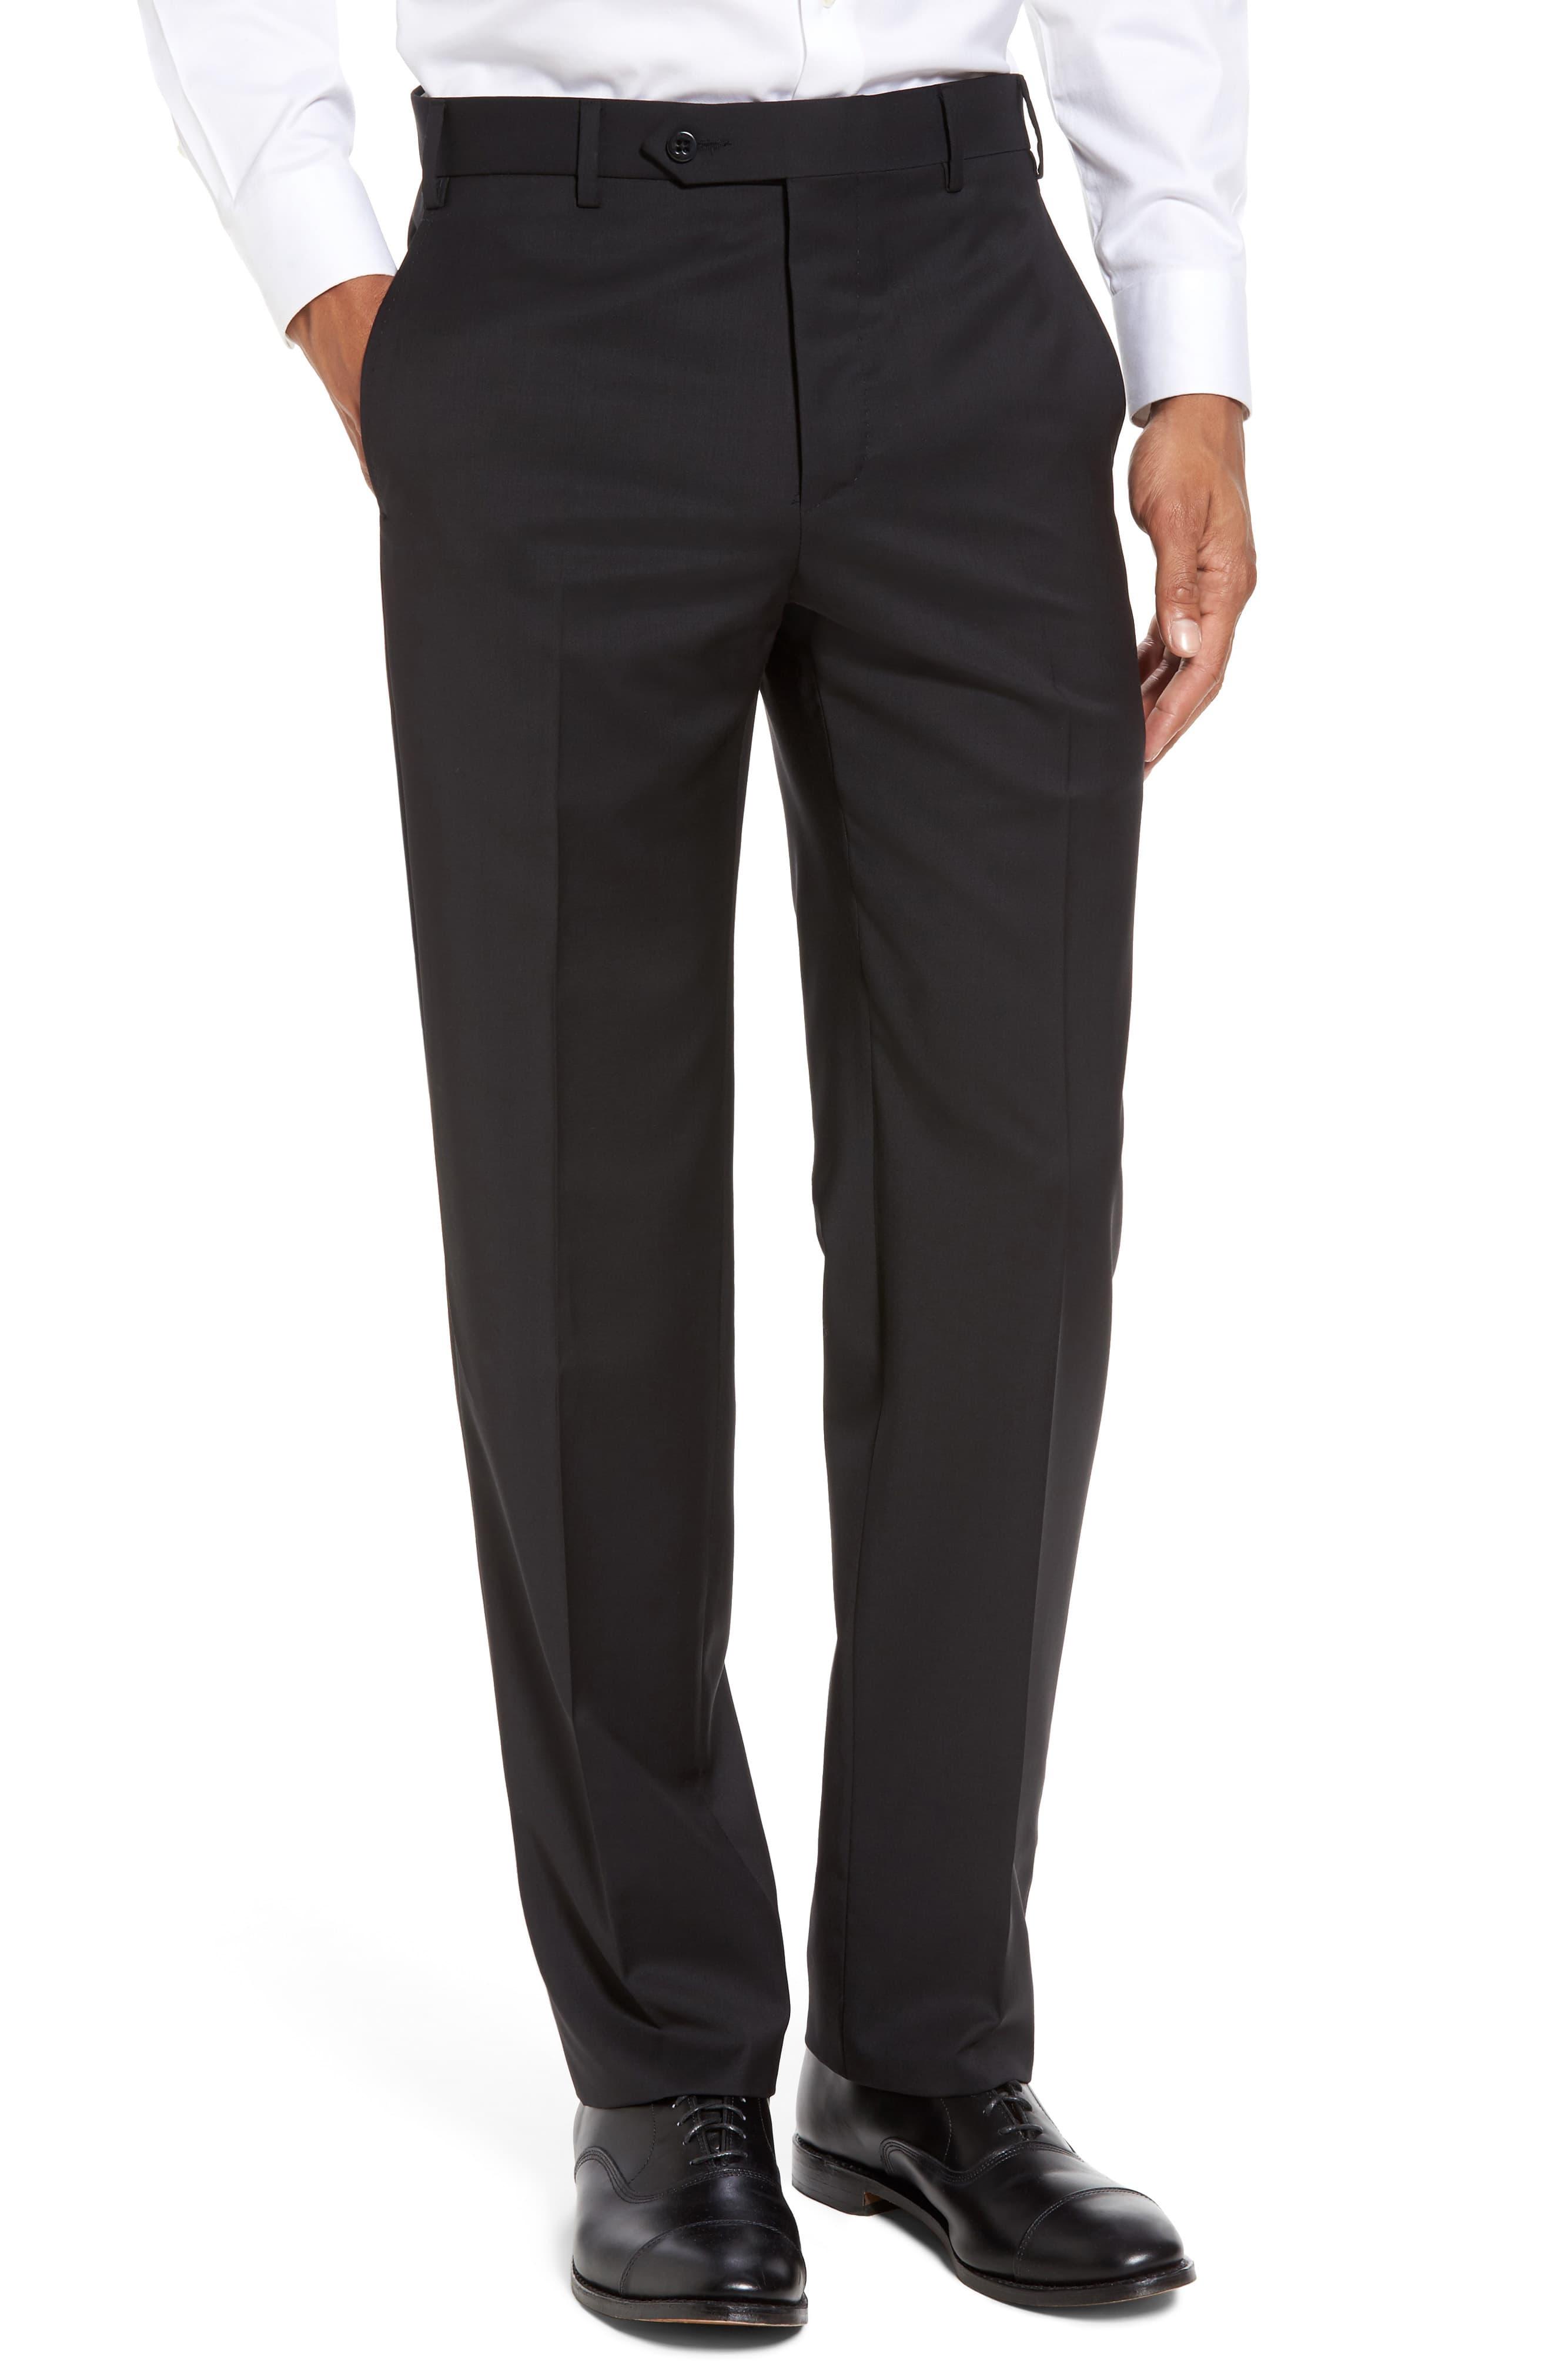 Zanella Devon Flat Front Solid Wool Trousers in Black for Men - Lyst